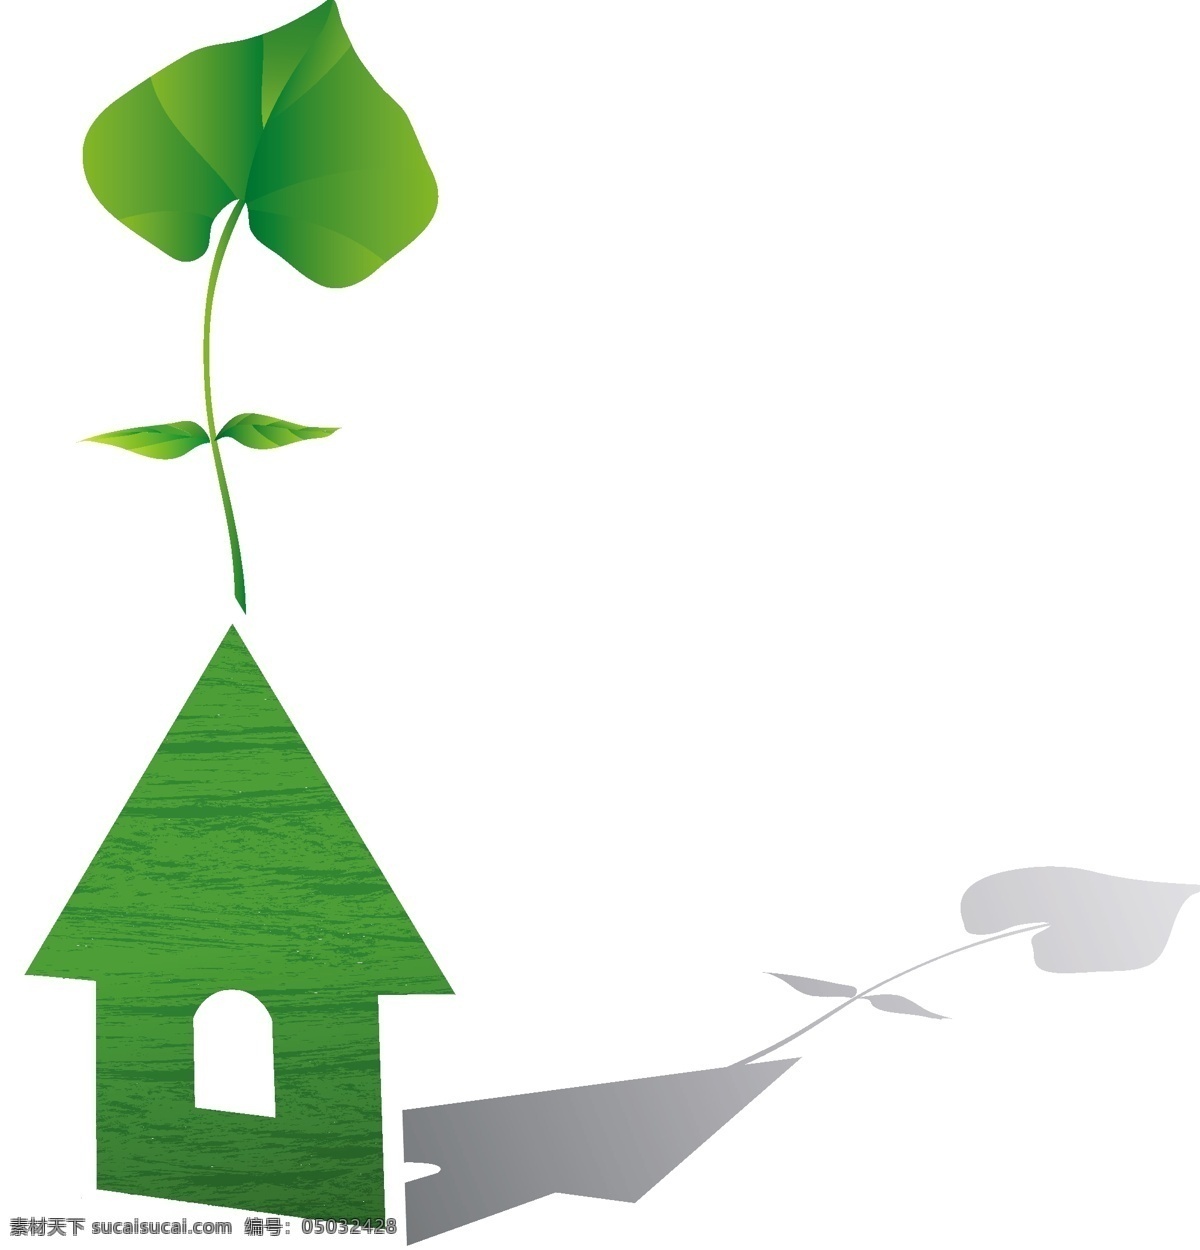 环保类插画 绿色生活 插画 环保 绿色房子 树叶 矢量图 其他矢量图